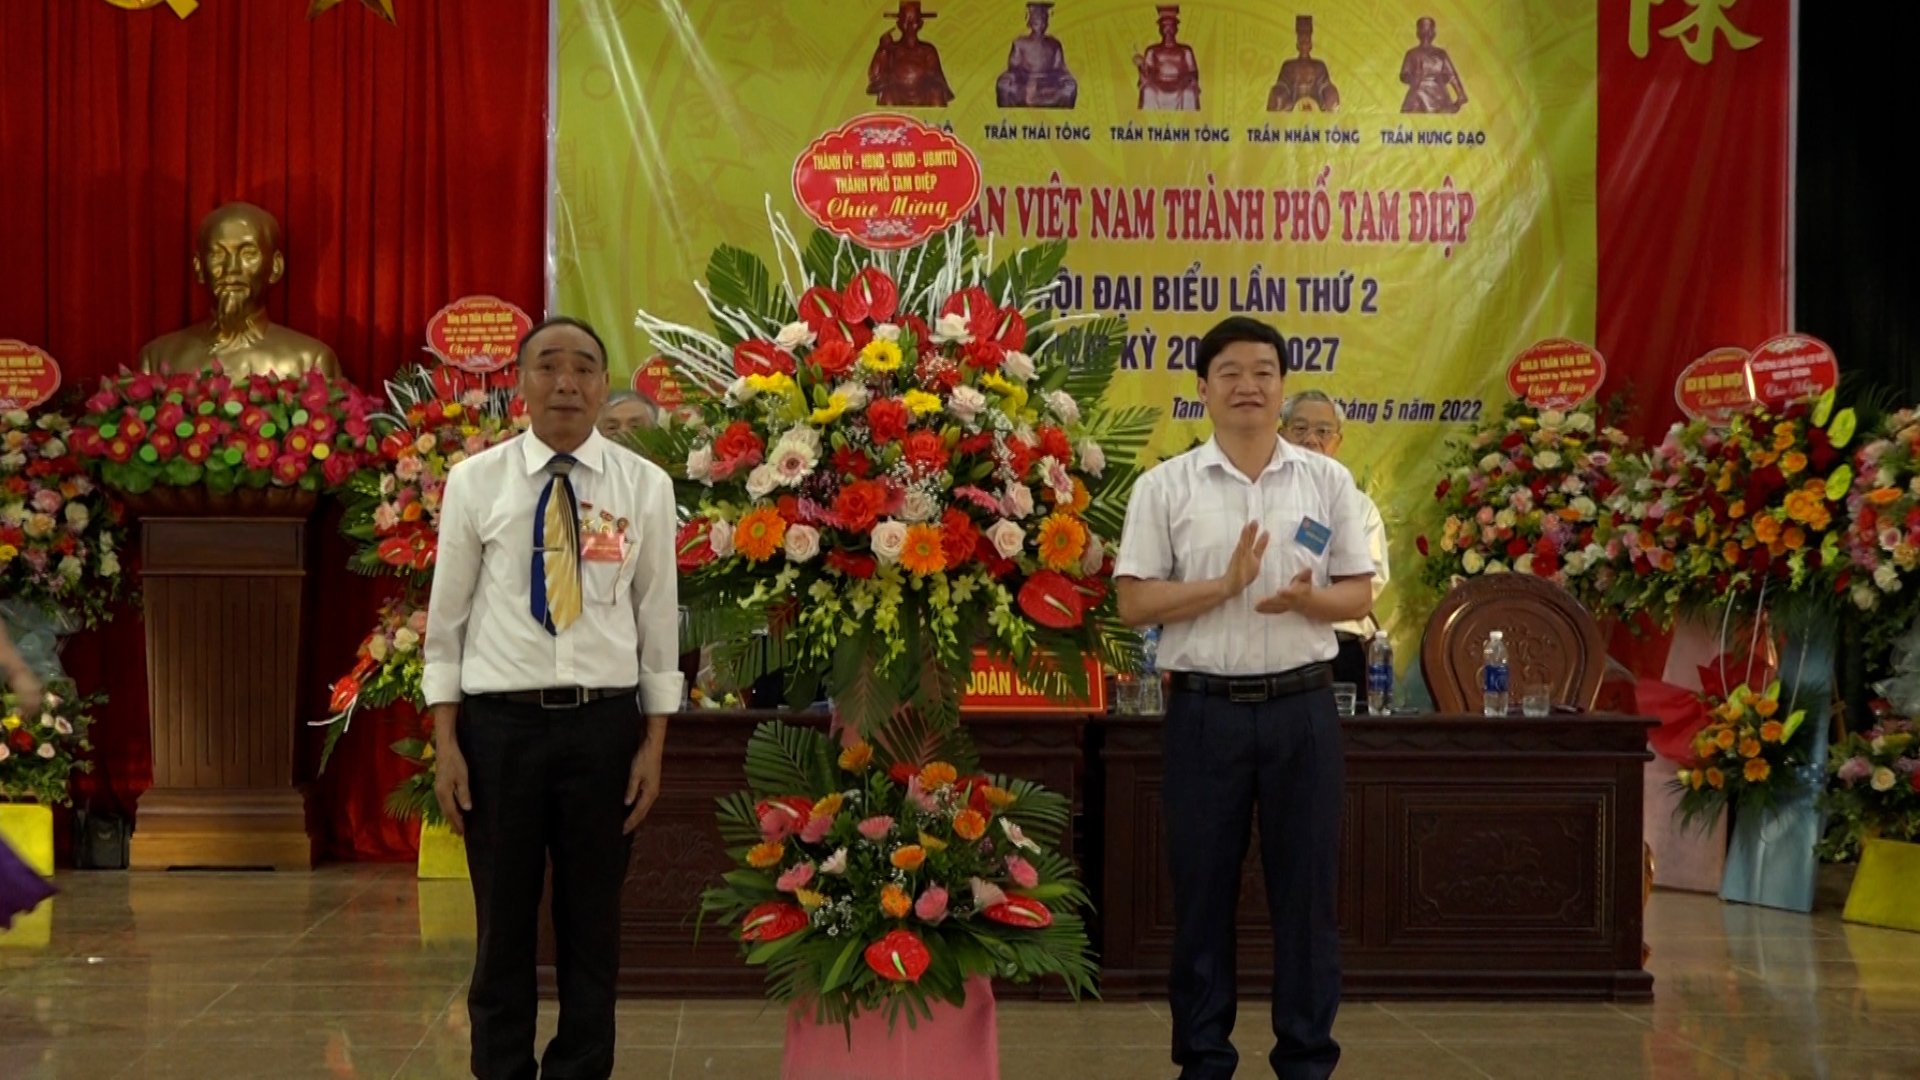 Đại hội họ Trần Việt Nam thành phố Tam Điệp lần thứ II, nhiệm kỳ 2022 – 2027.